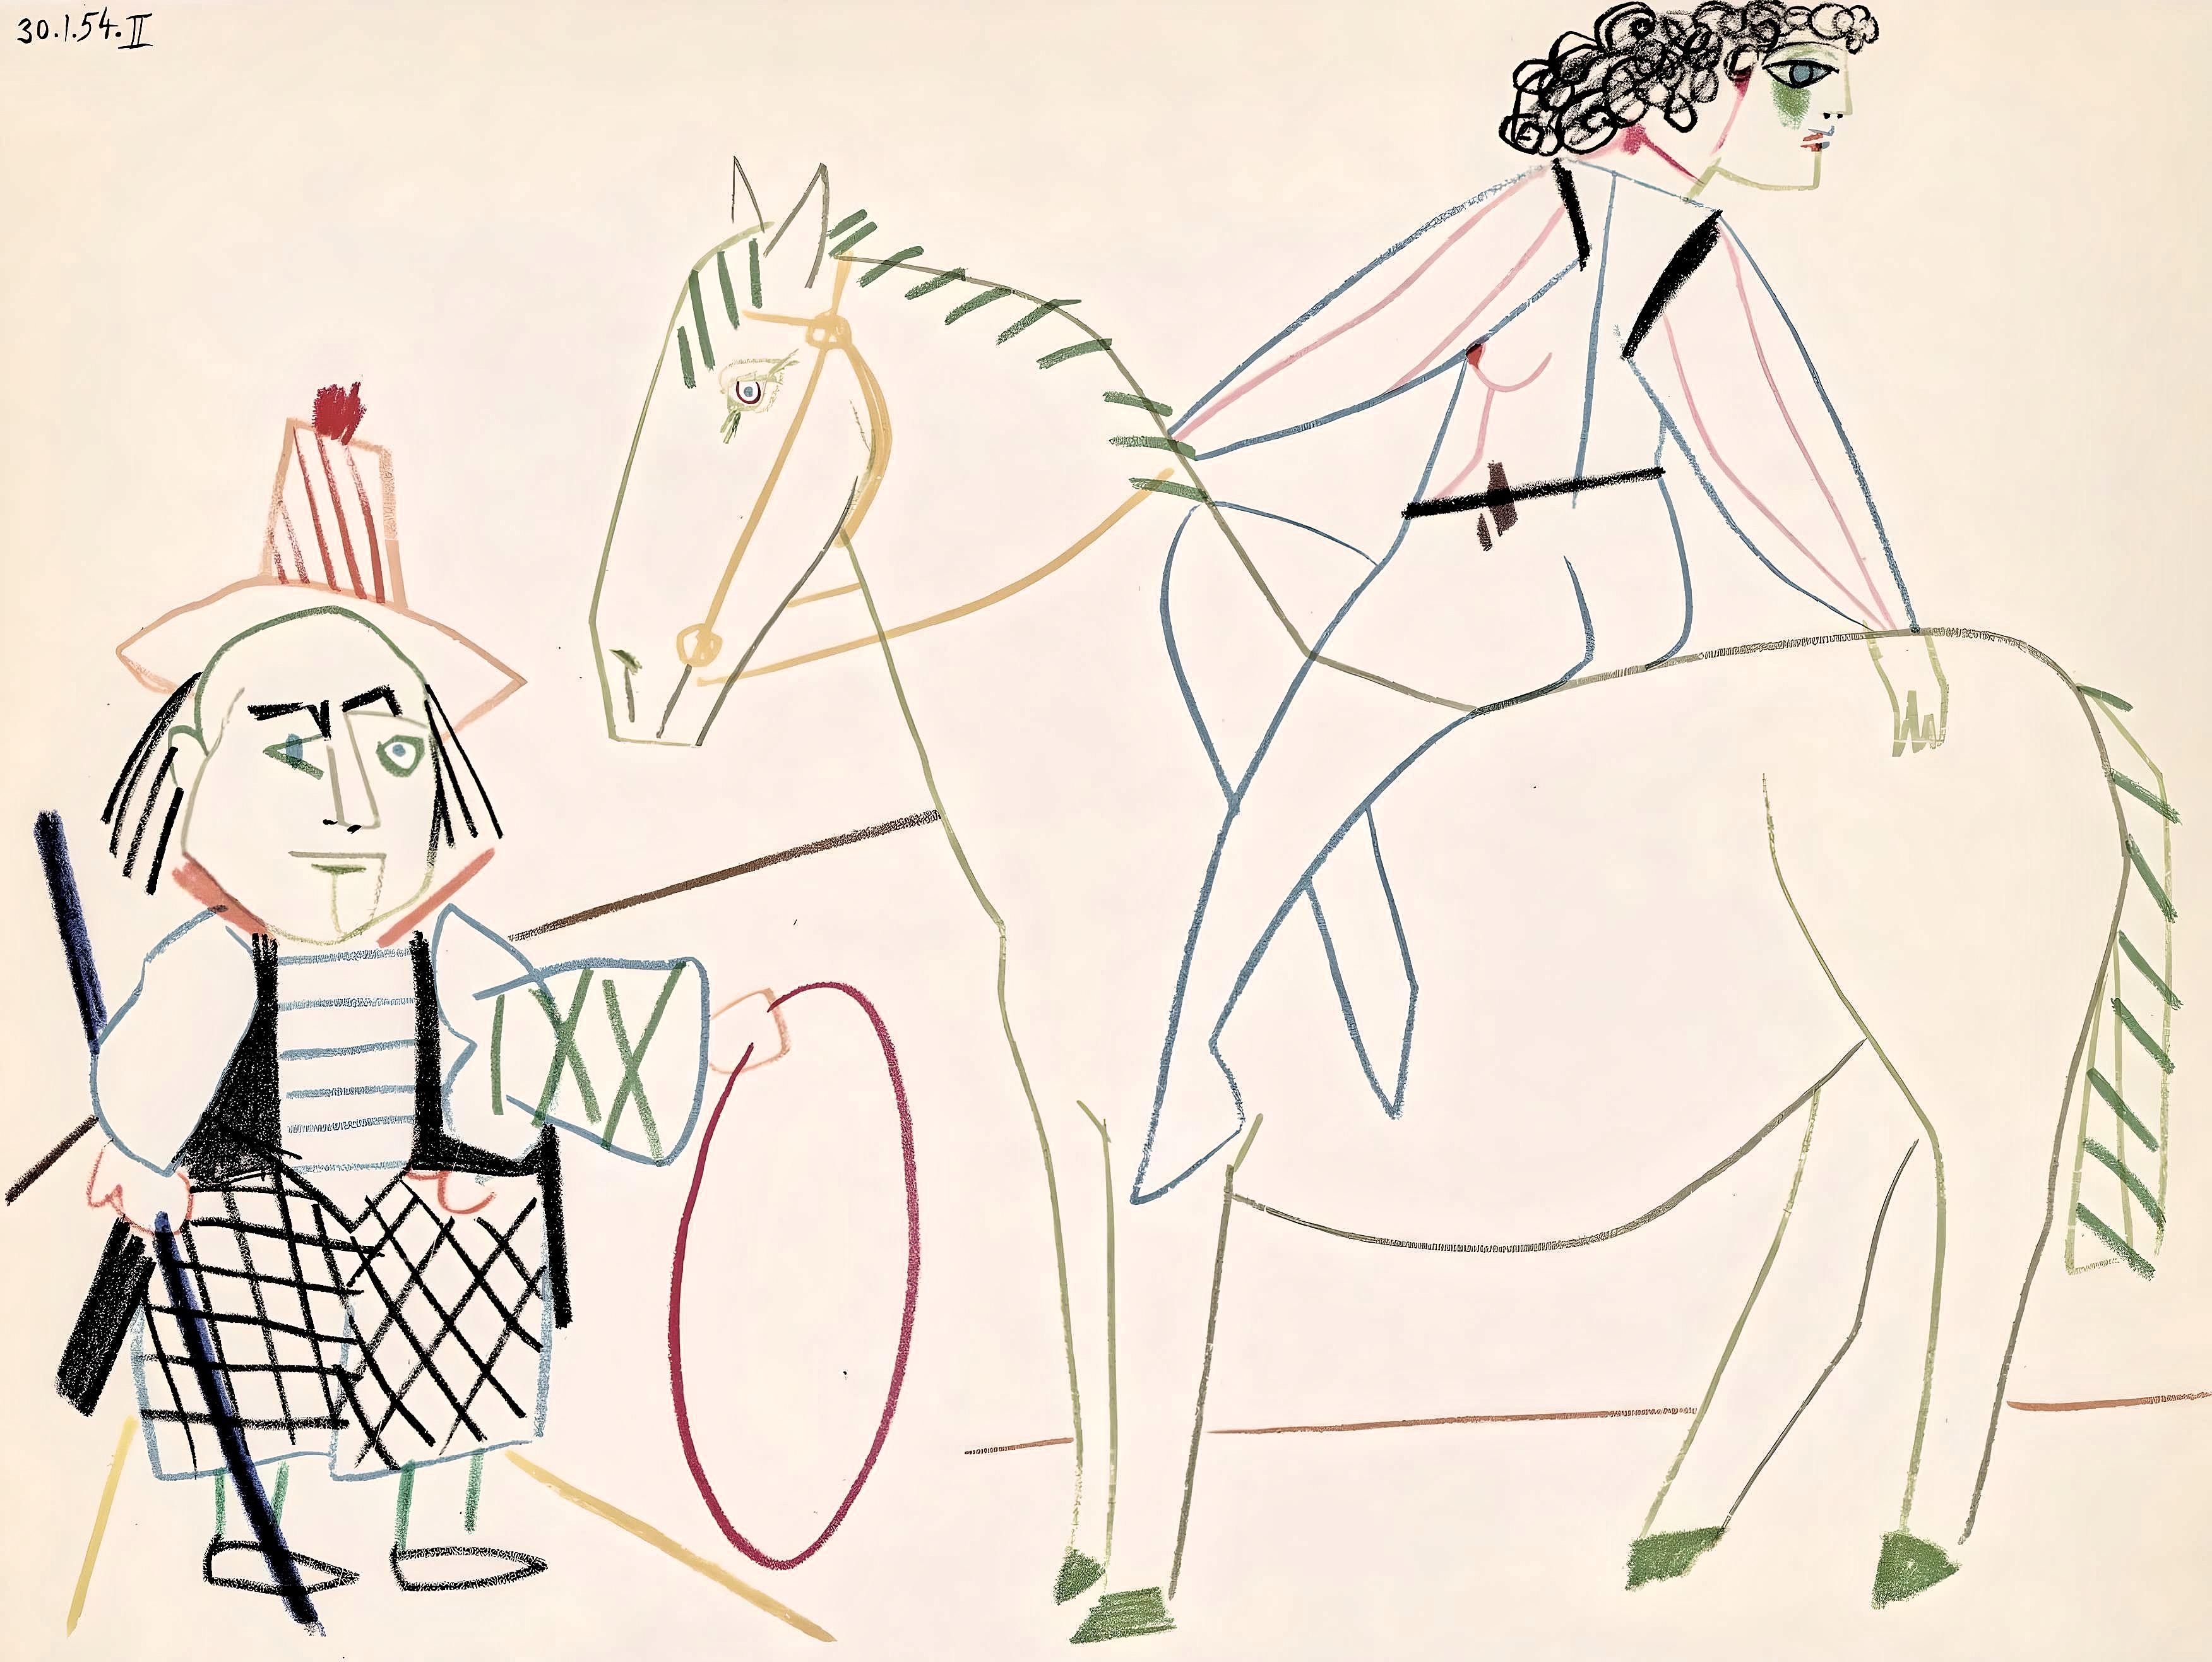 Pablo Picasso Landscape Print - Picasso, Composition, La Comédie Humaine (after)